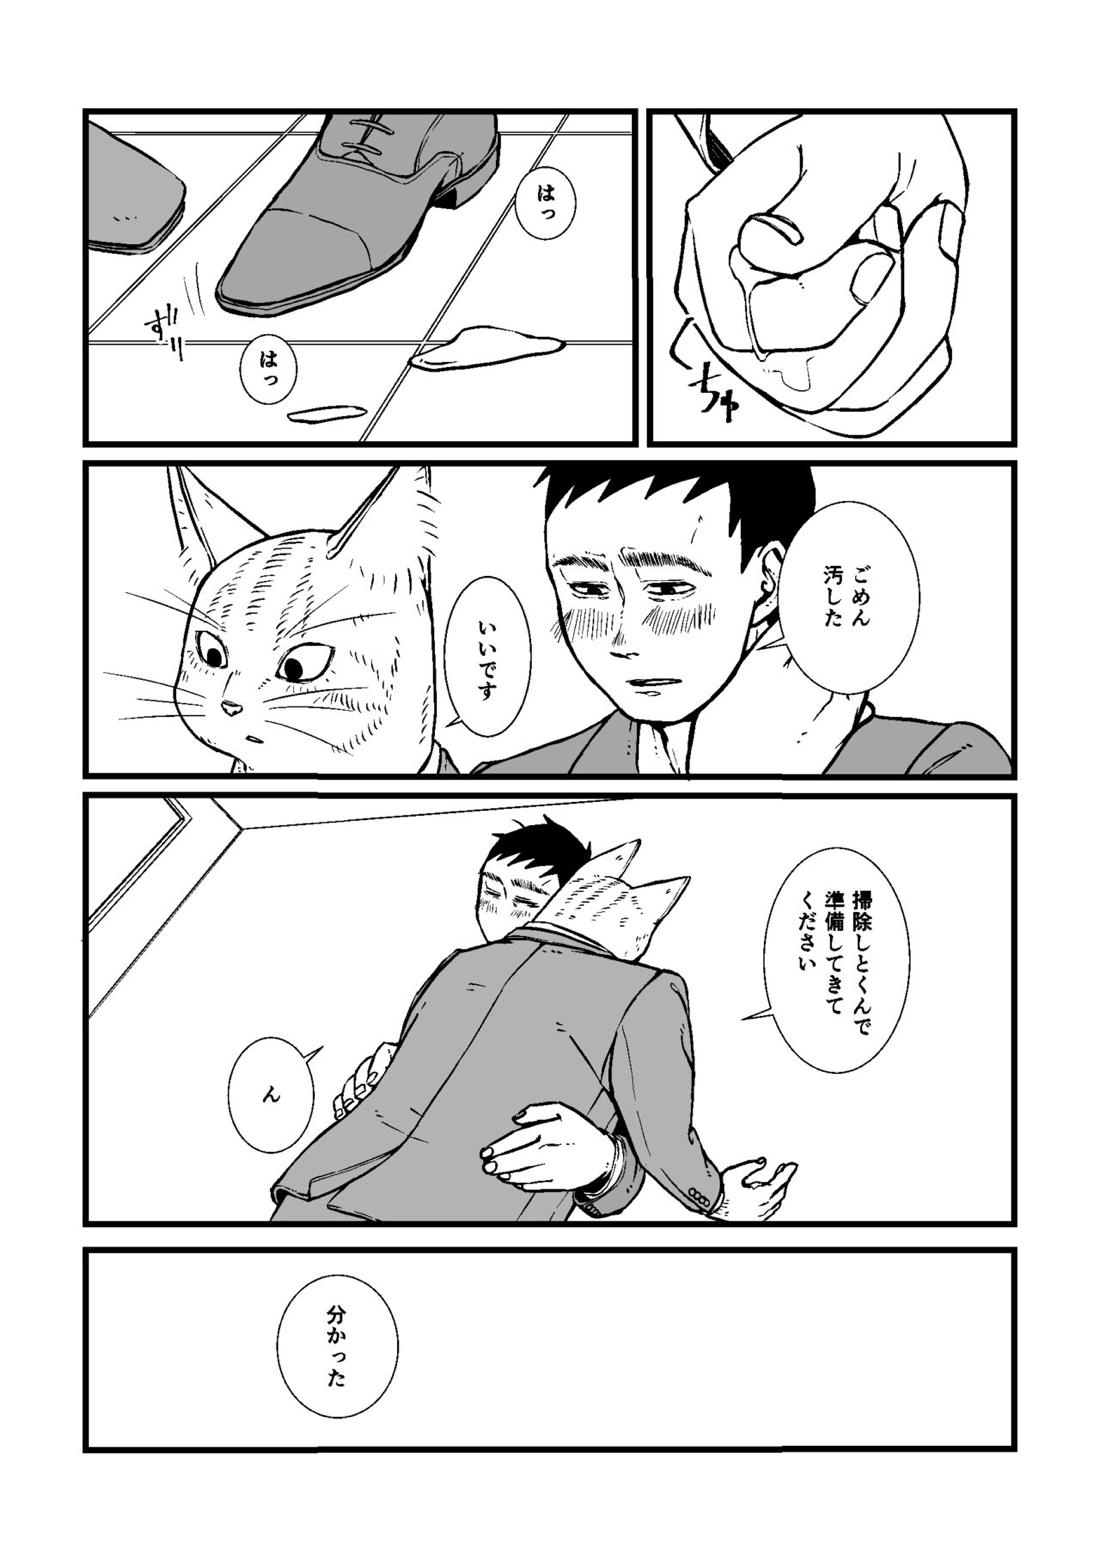 三茶x塚内 R18 漫画 10ページ